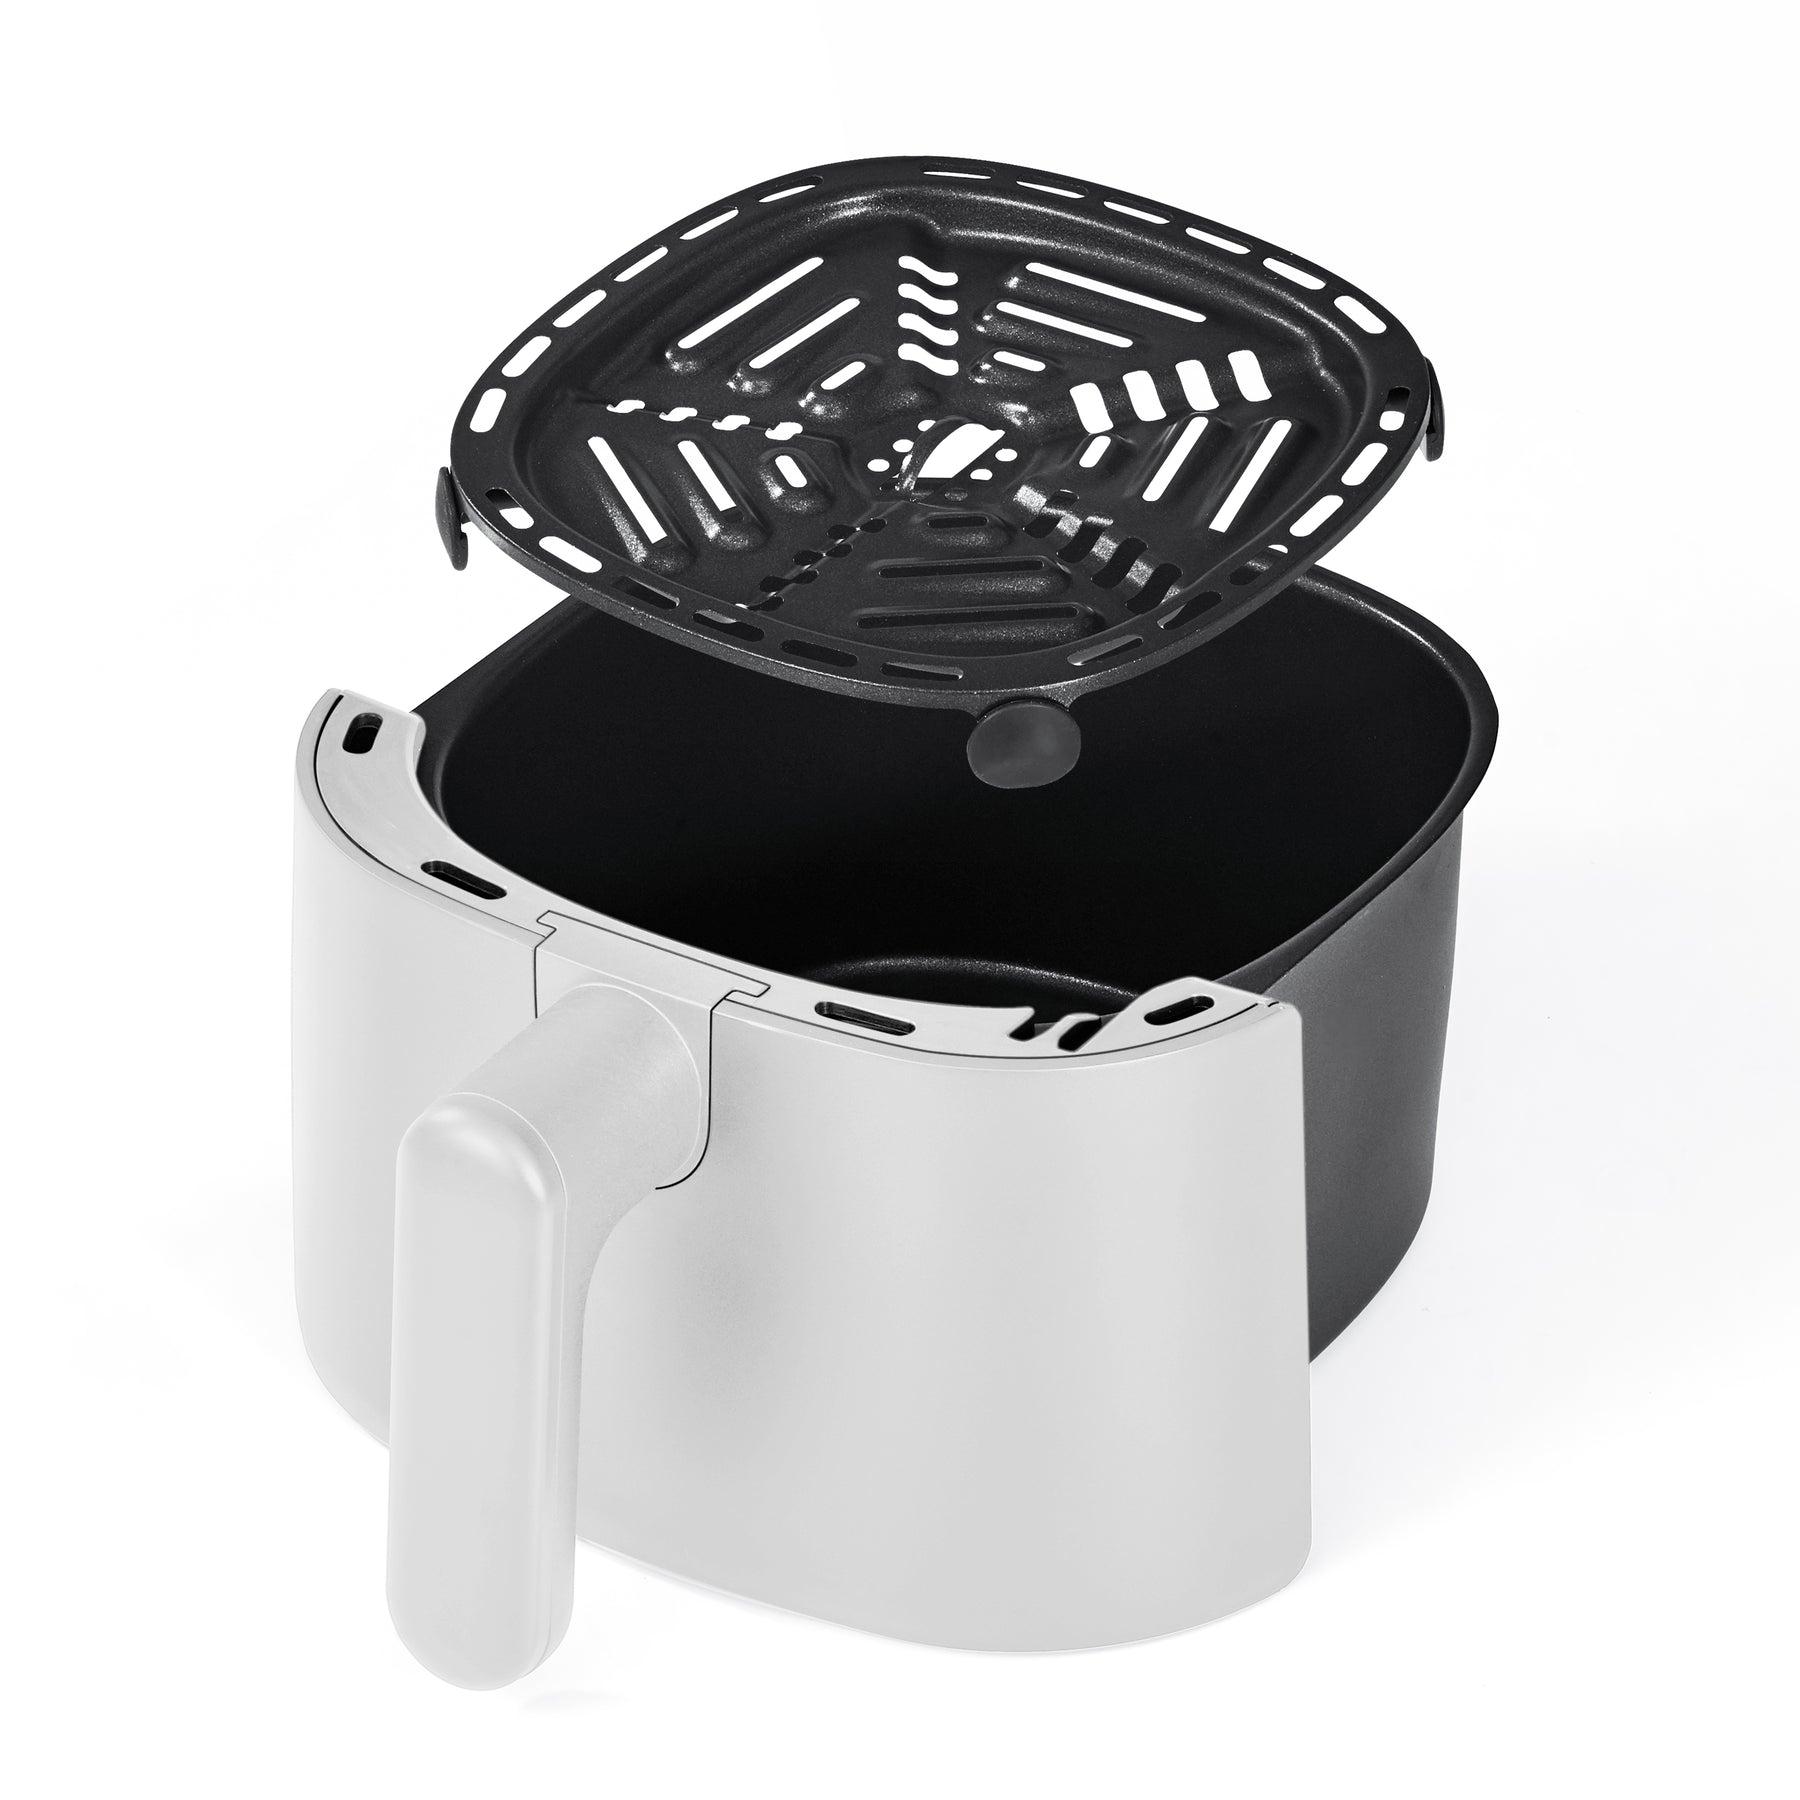 Bella Pro 3.0qt Air Fryer – Bella Housewares